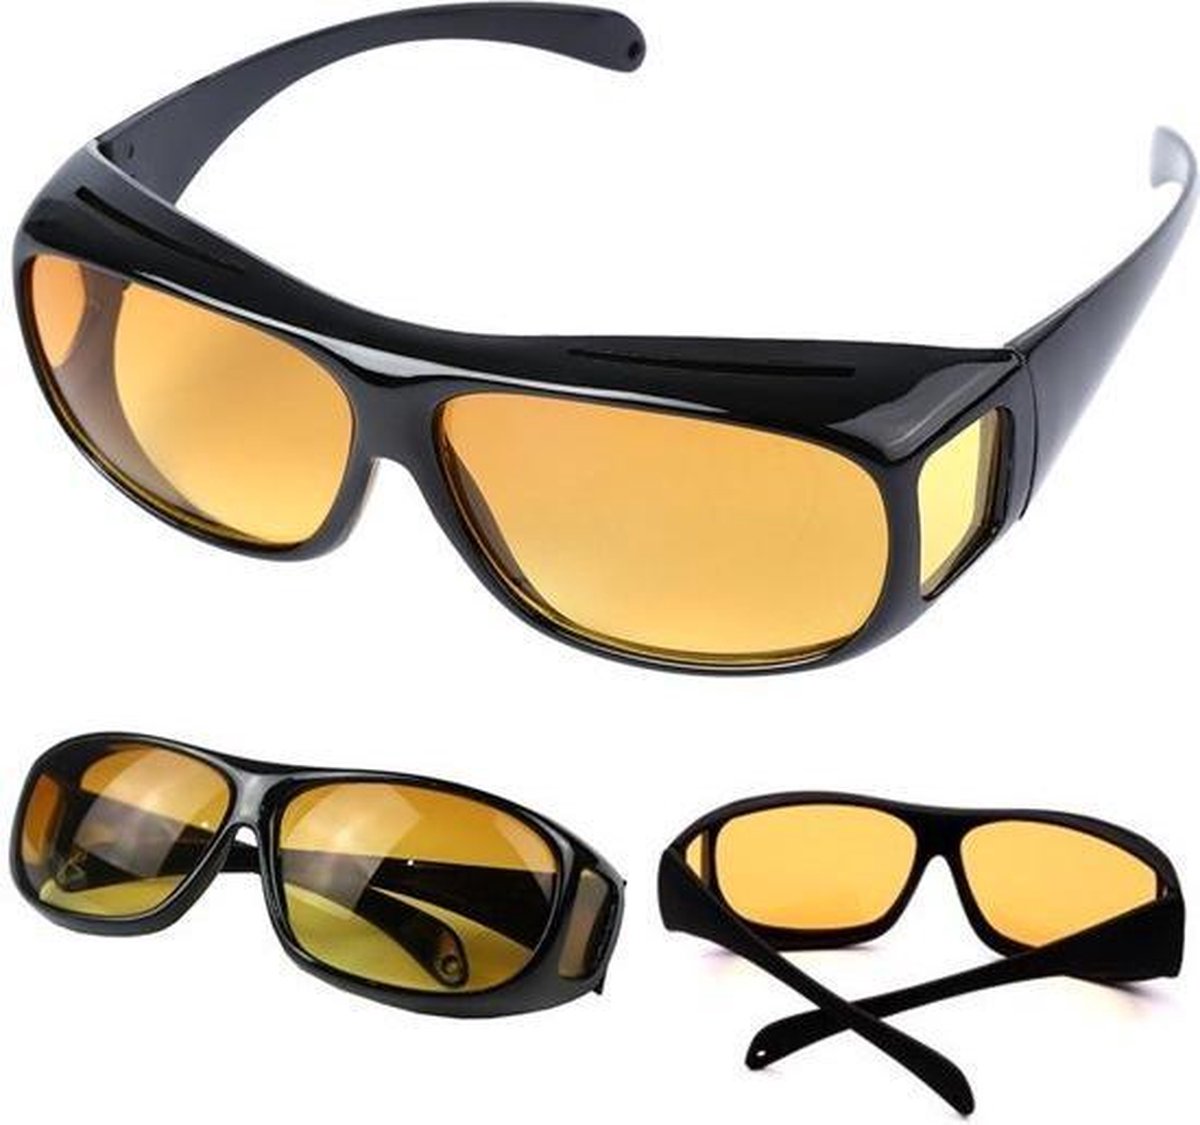 Overzet bril nachtzicht – Nachtbril – Mistbril – Autobril – Nachtblind - Merkloos